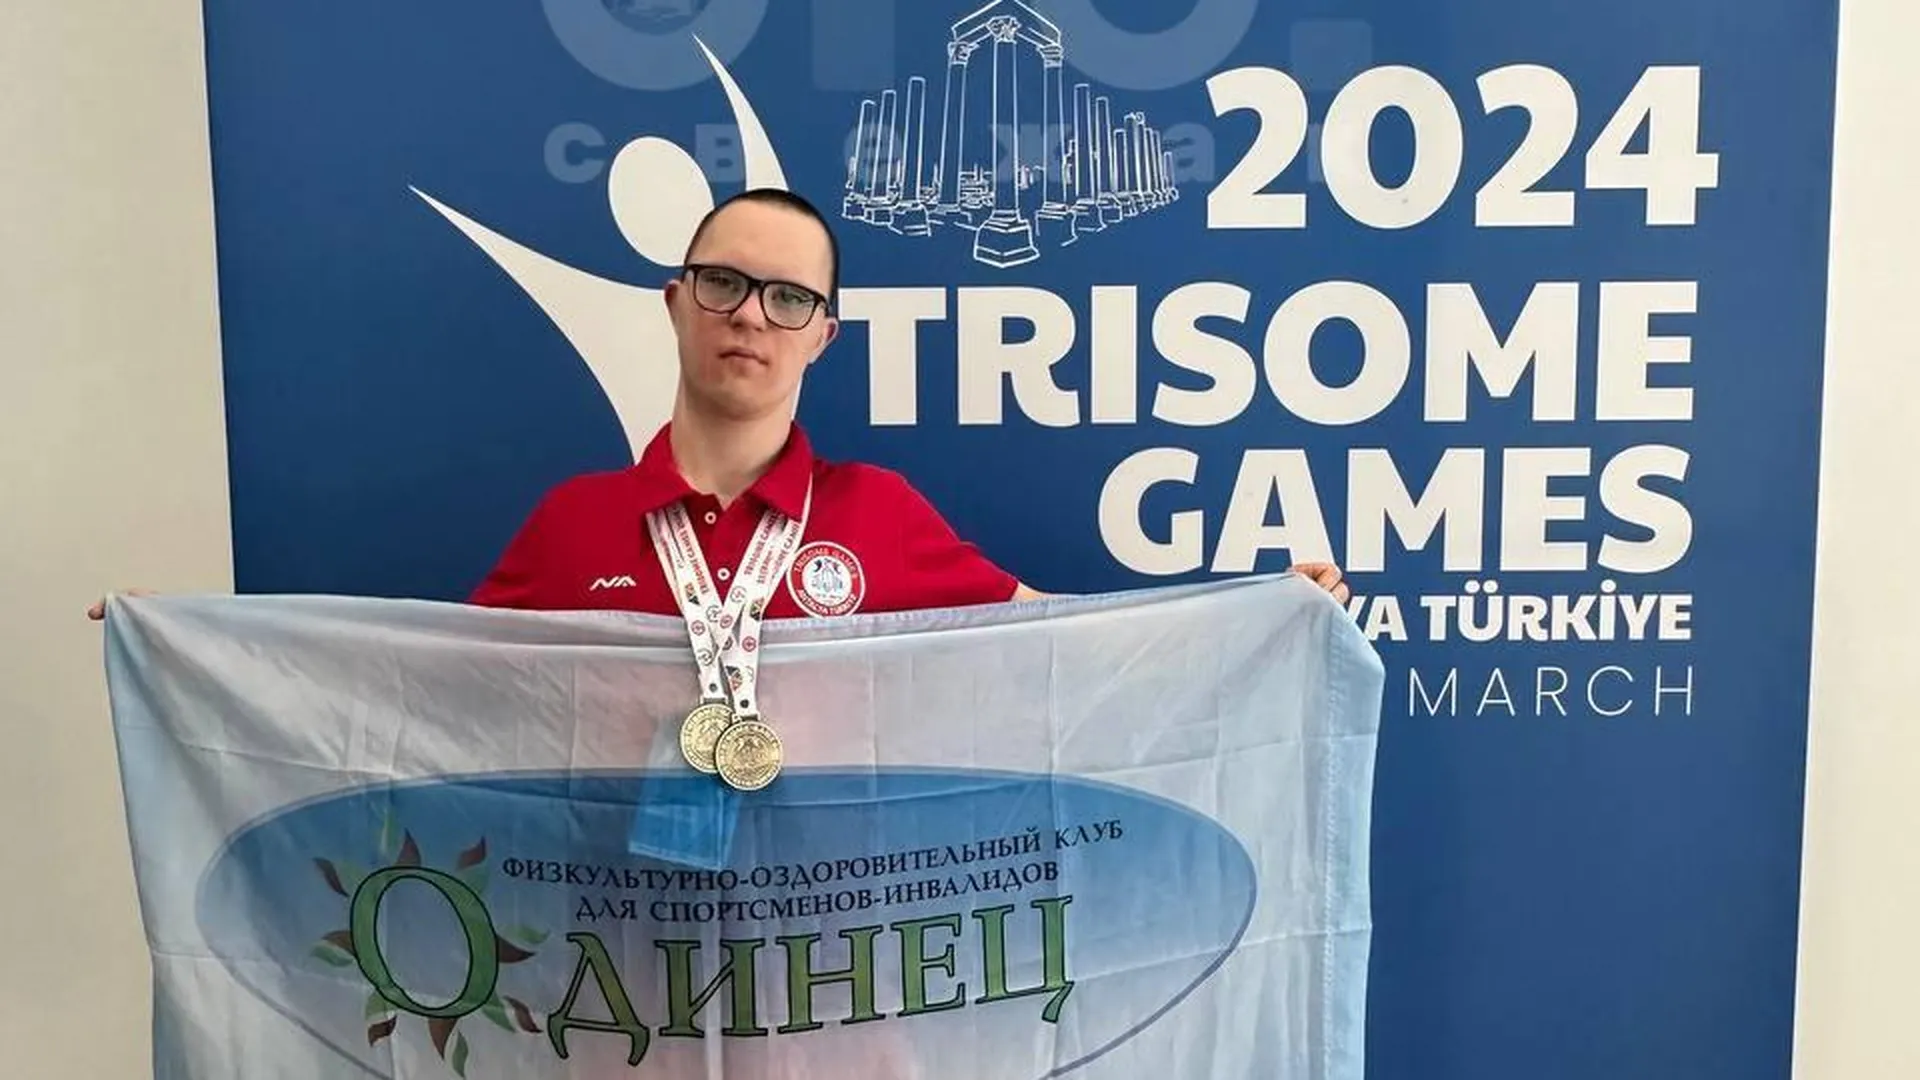 Спортсмен из Одинцова Алексей Дегтярев завоевал 6 медалей на соревнованиях в Турции